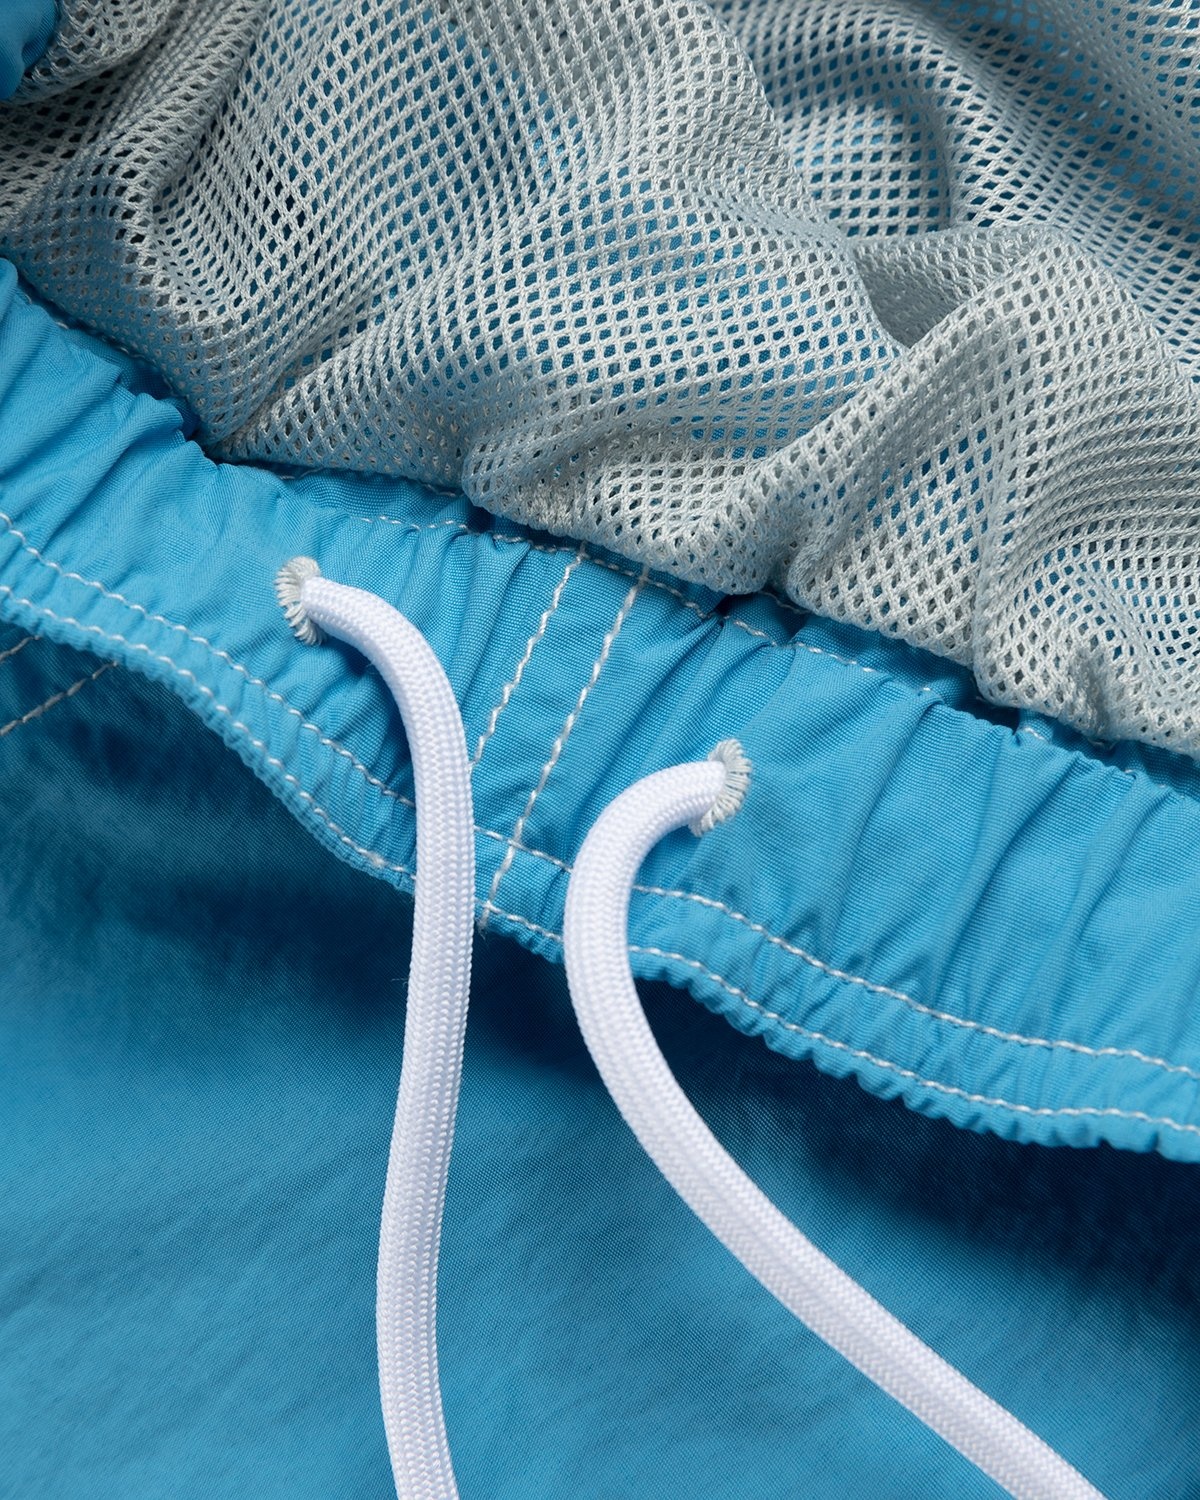 Highsnobiety – Contrast Brushed Nylon Water Shorts Blue - Shorts - Blue - Image 5